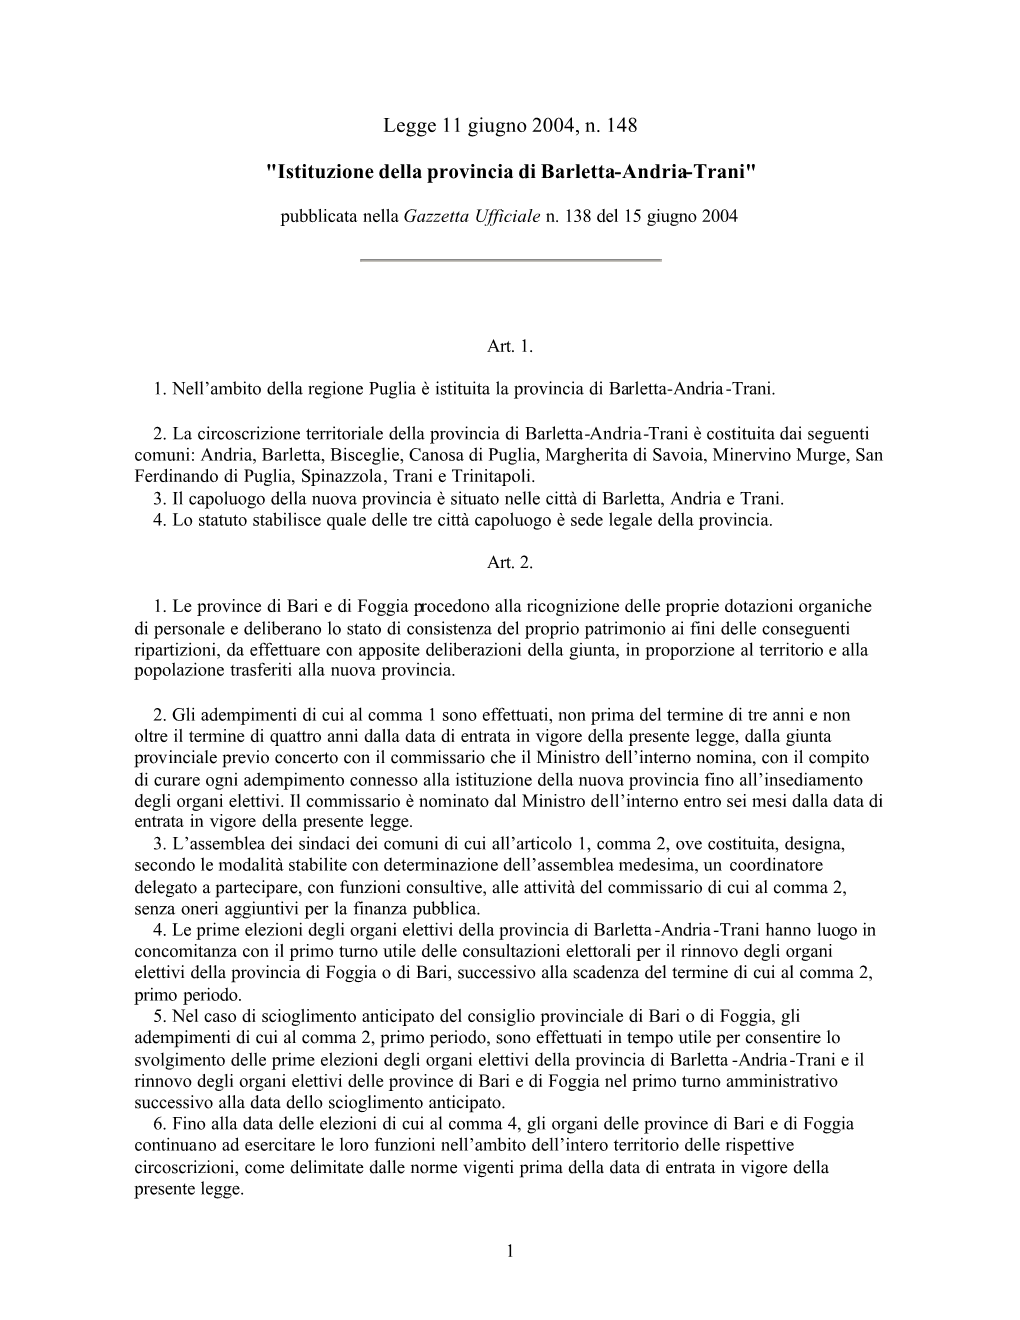 Istituzione Della Provincia Di Barletta-Andria-Trani"